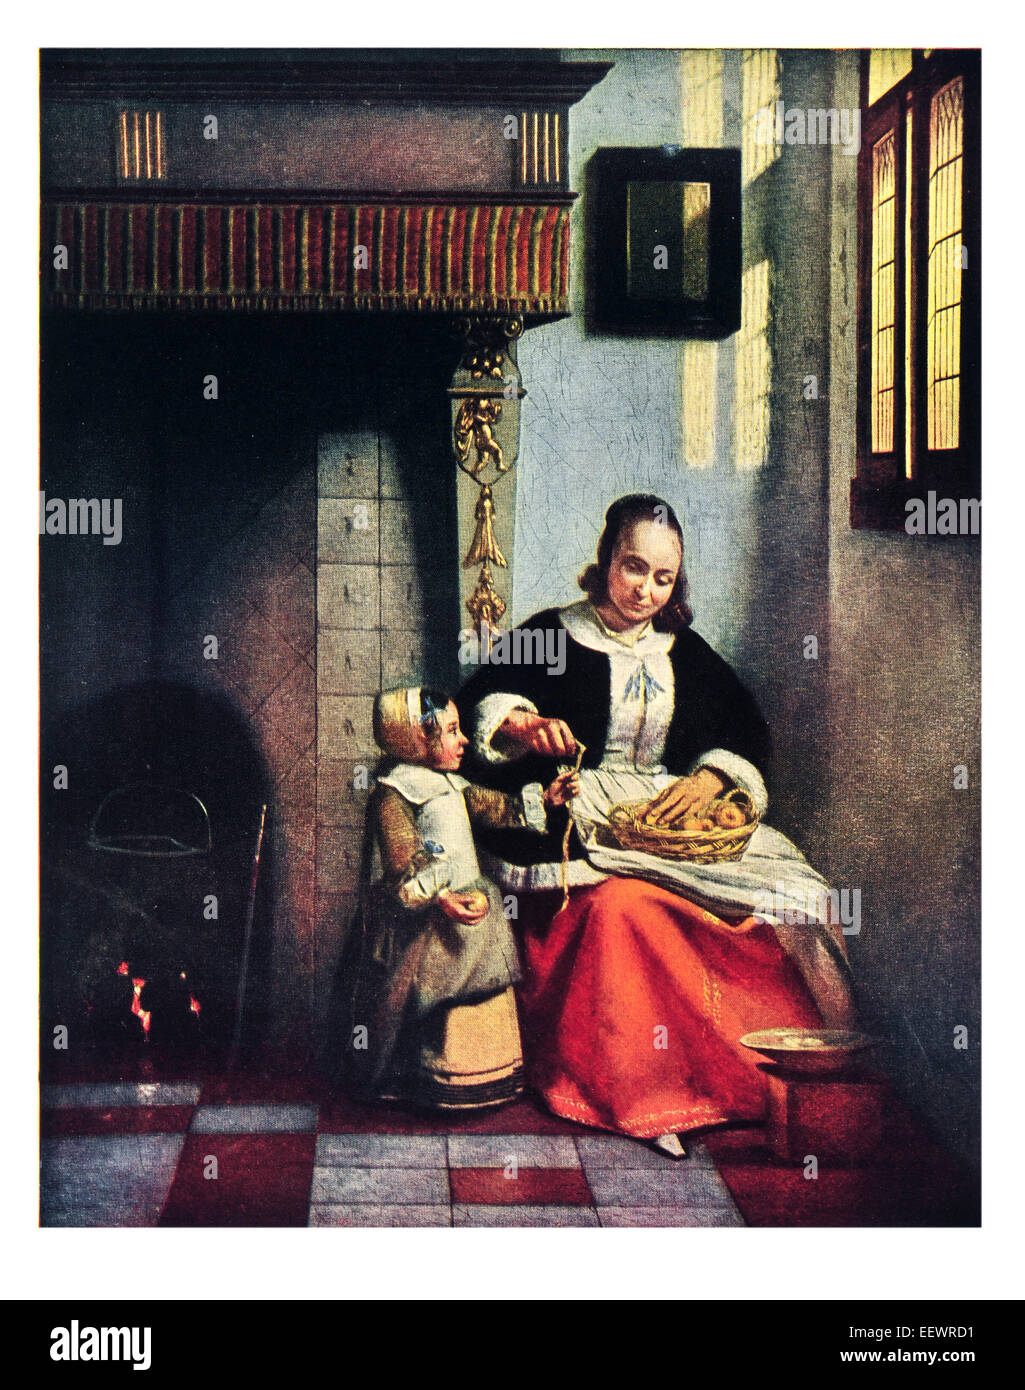 Mujer pelar manzanas Pieter De Hooch 1629 - 1684 La Edad de Oro holandesa pintor Wallace Collection escena nacional chimenea bordado Foto de stock